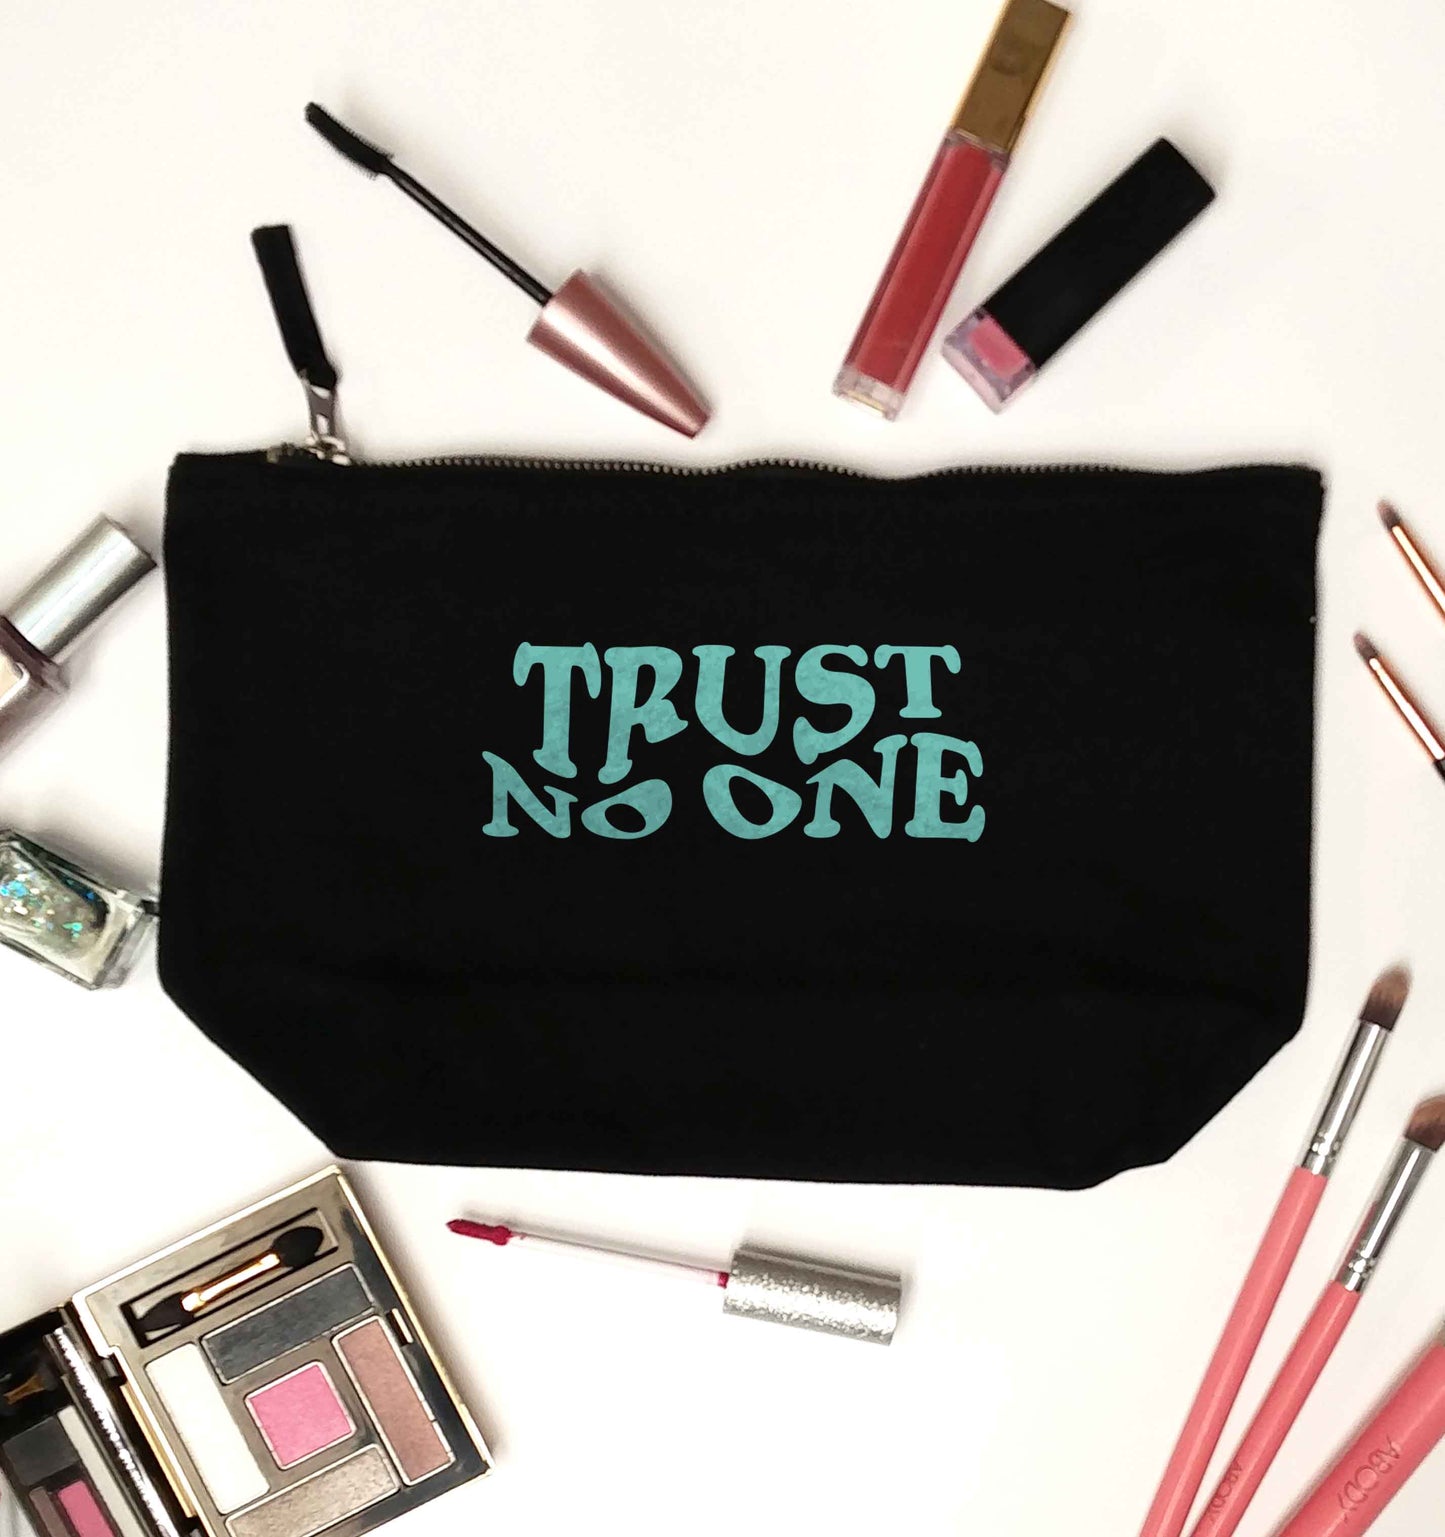 Trust no one black makeup bag